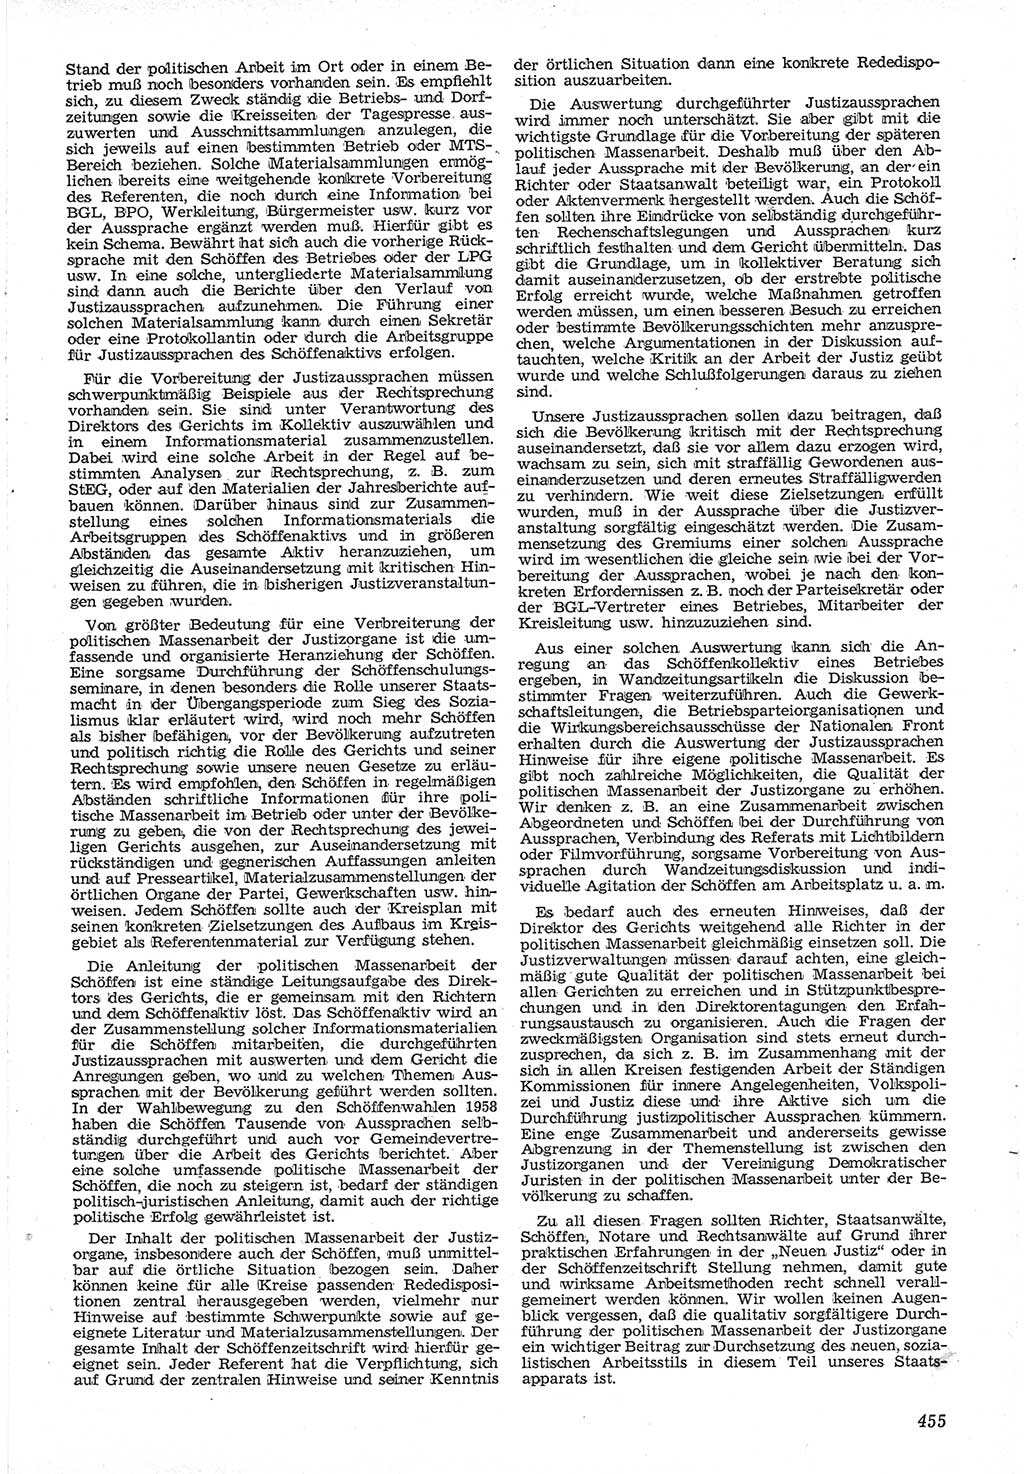 Neue Justiz (NJ), Zeitschrift für Recht und Rechtswissenschaft [Deutsche Demokratische Republik (DDR)], 12. Jahrgang 1958, Seite 455 (NJ DDR 1958, S. 455)